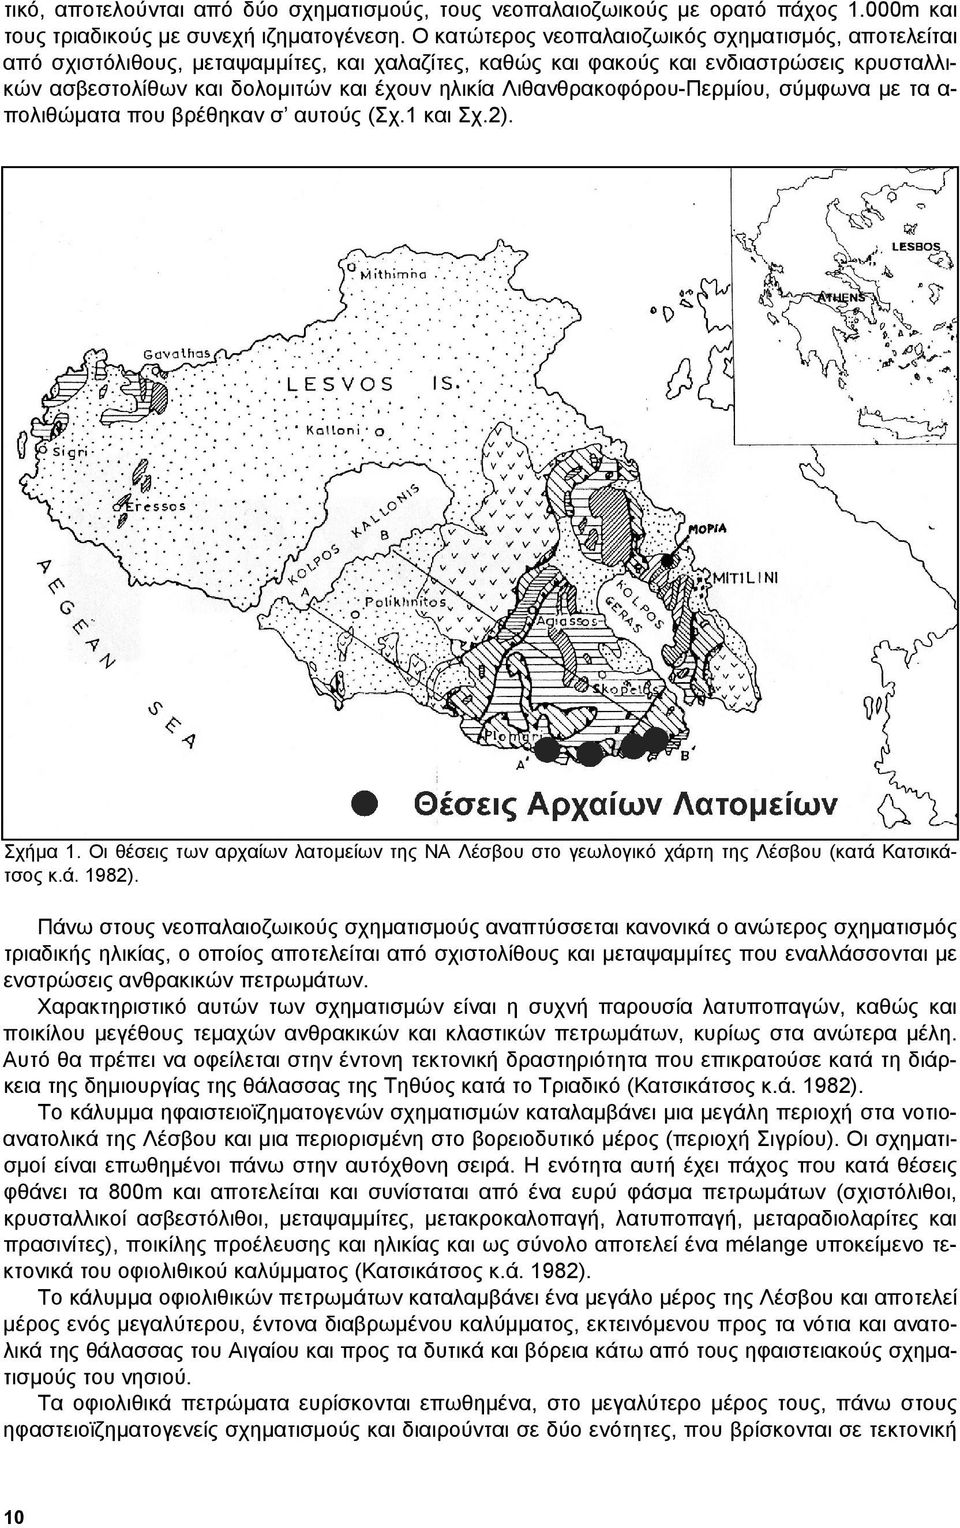 Λιθανθρακοφόρου-Περµίου, σύµφωνα µε τα α- πολιθώµατα που βρέθηκαν σ αυτούς (Σχ.1 και Σχ.2). Σχήµα 1. Οι θέσεις των αρχαίων λατοµείων της ΝΑ Λέσβου στο γεωλογικό χάρτη της Λέσβου (κατά Κατσικάτσος κ.ά. 1982).